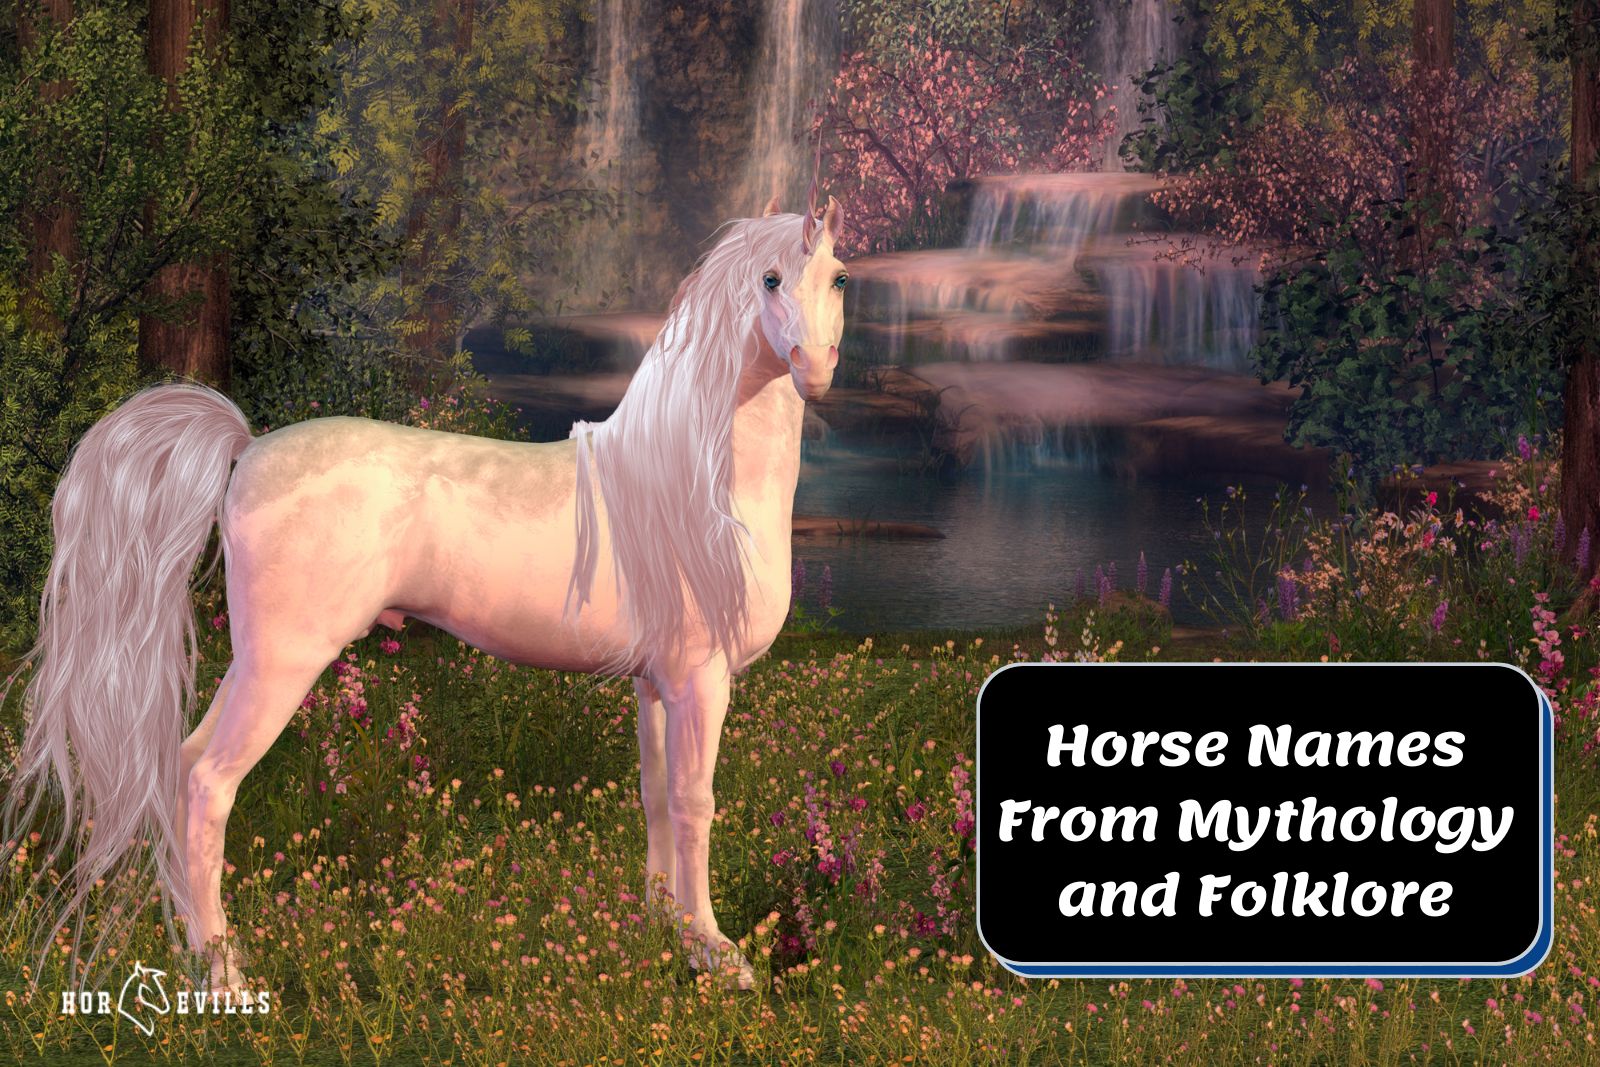 beautiful unicorn horse beside "Horse Names From Mythology and Folklore"